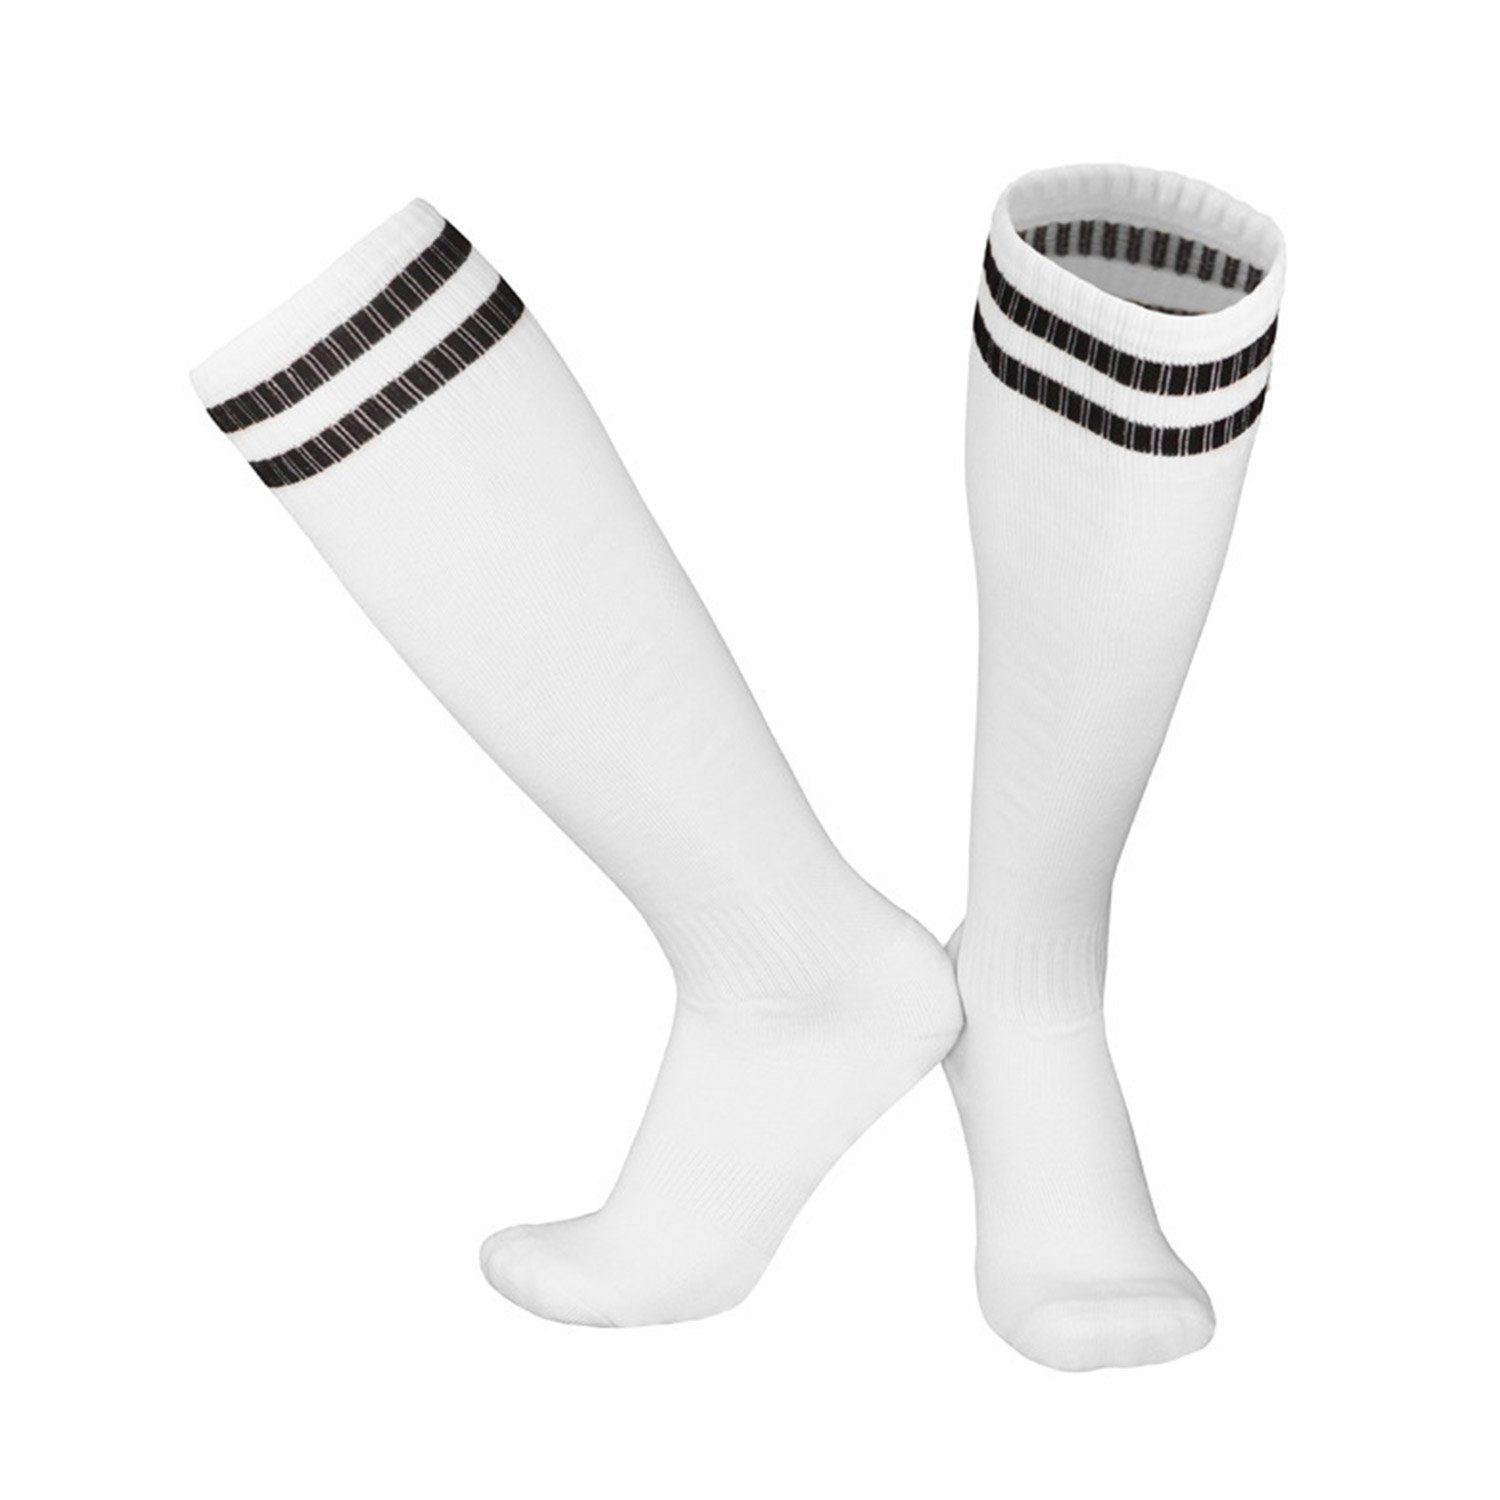 Socken Laufen Fußballtraining, Erwachsene -Socken Socken Fadenfäden für Bewegung Weiß1 Training und Neutral MAGICSHE Kinderfußball Sportsocken